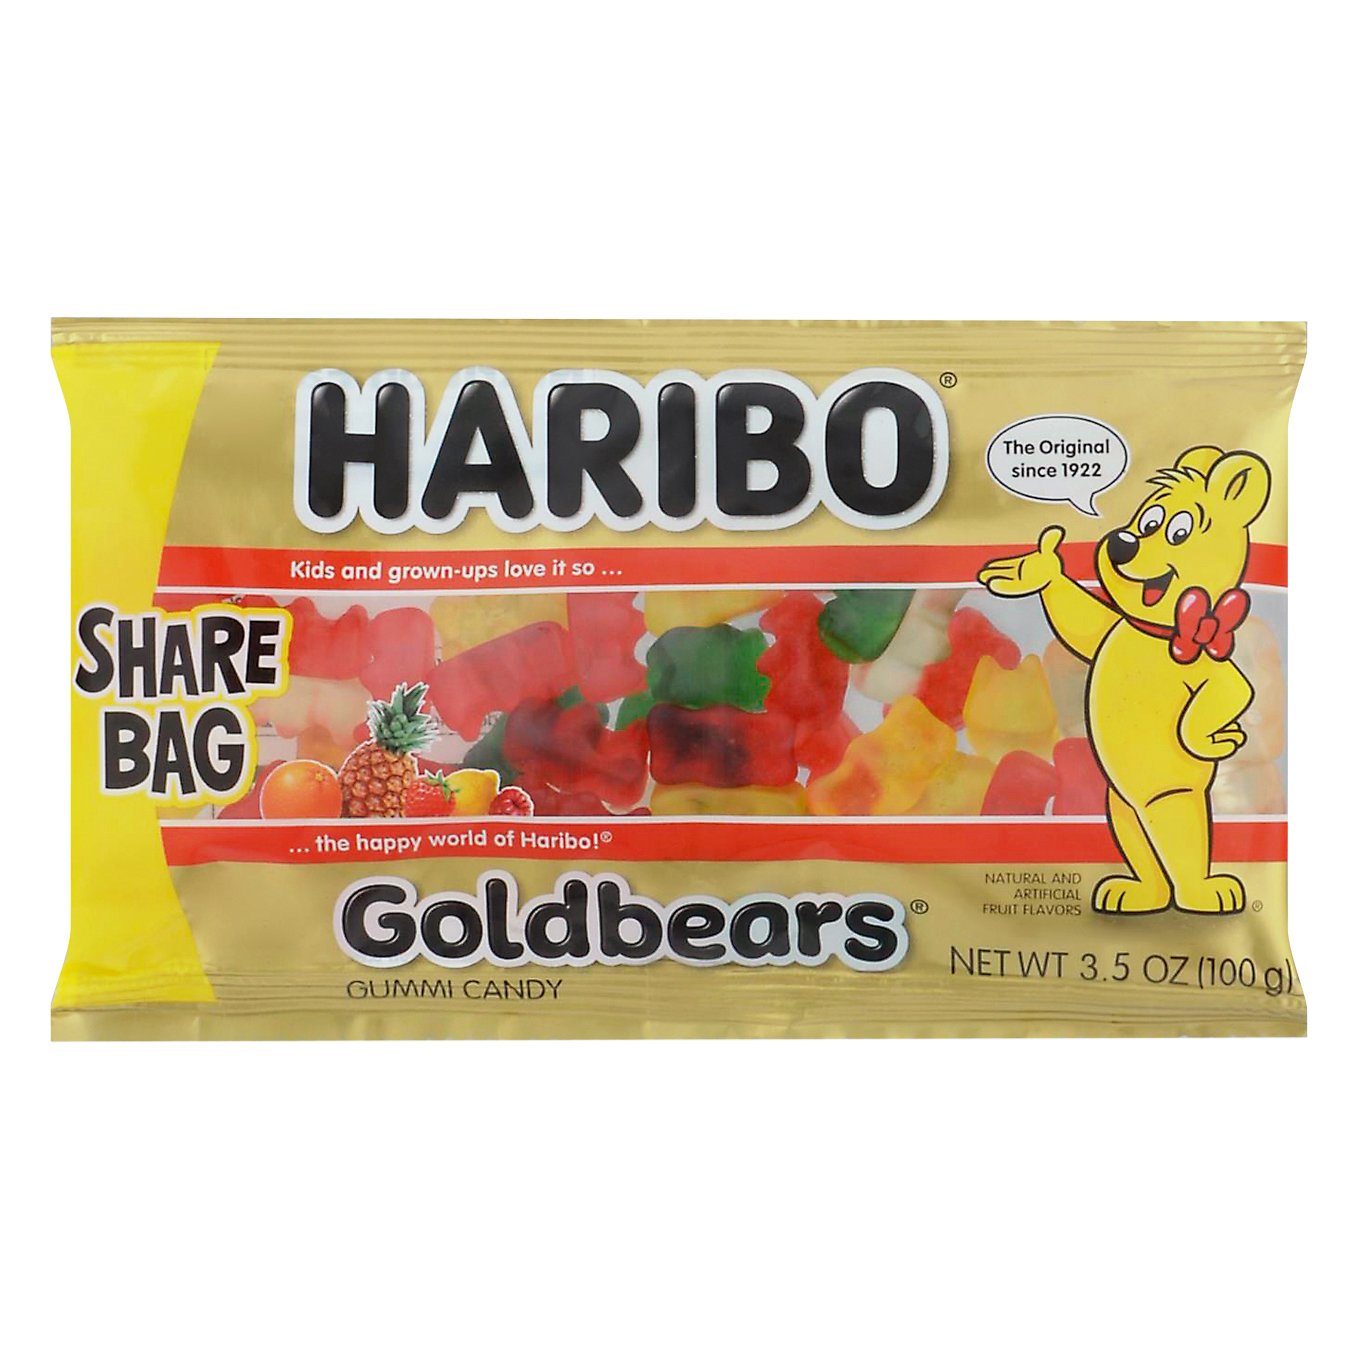 Haribo Gold Bears Gummi Candy - Share Bag - Shop Candy at H-E-B